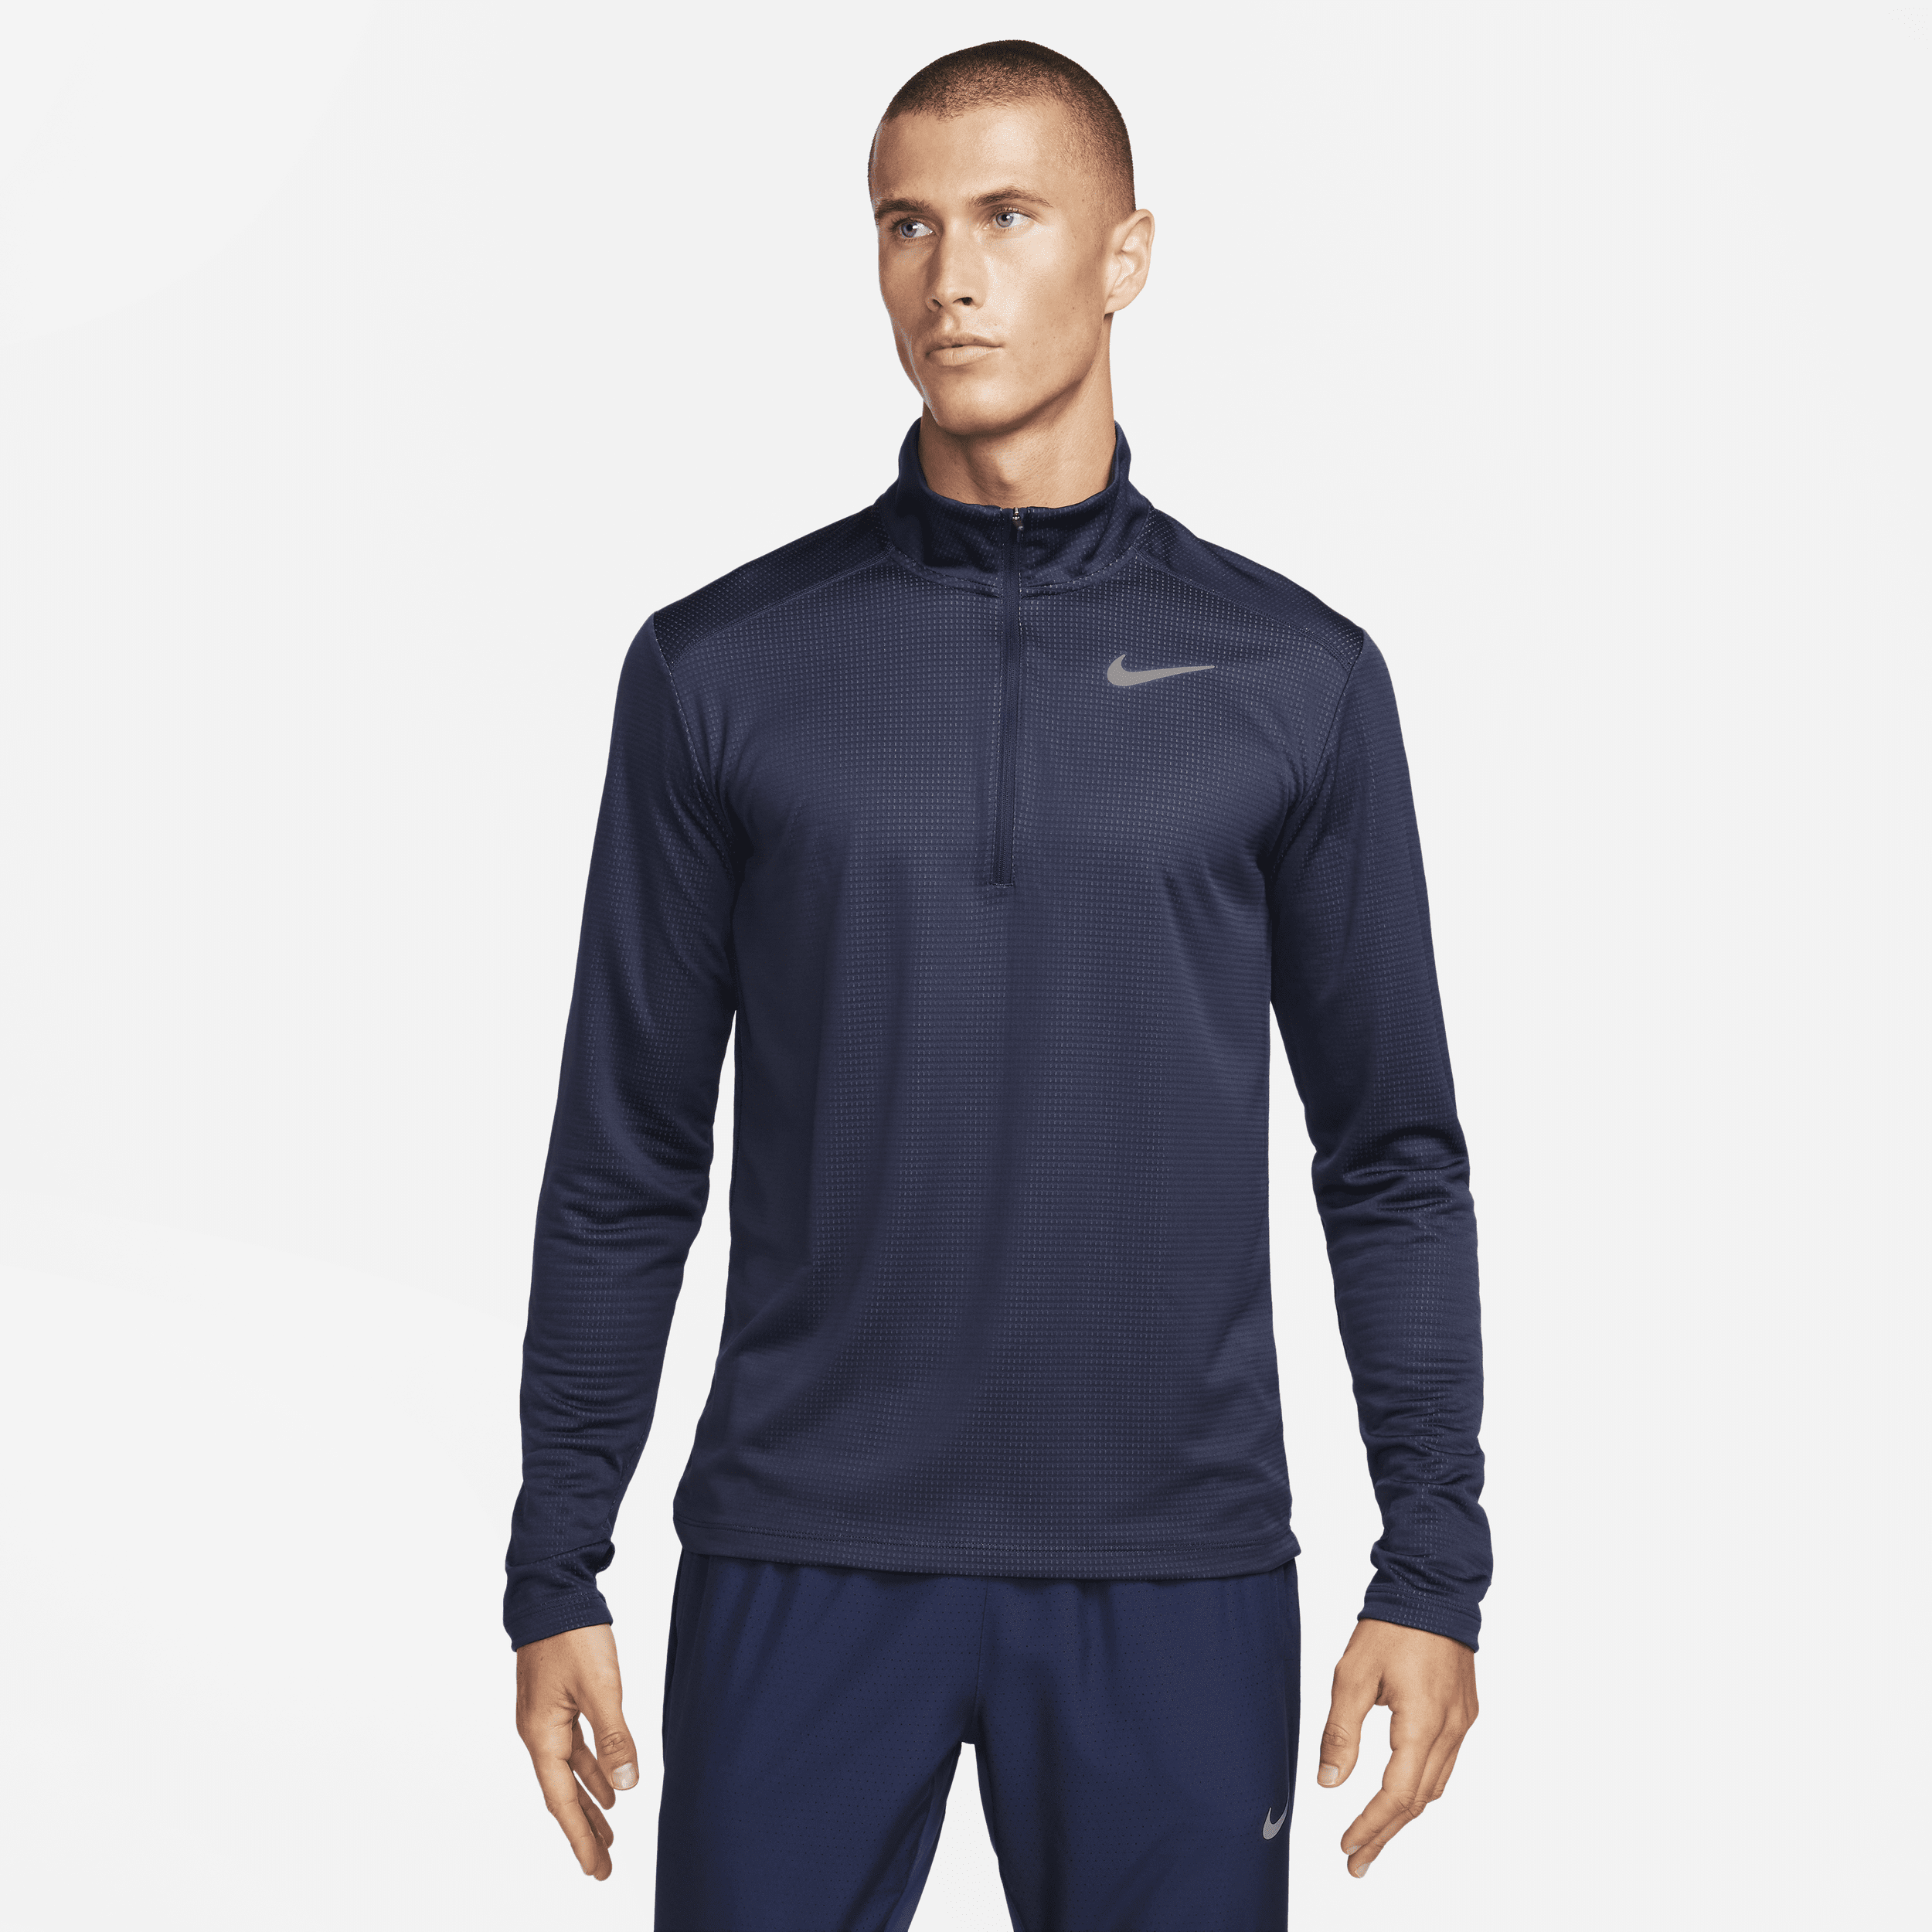 Maglia da running con zip a metà lunghezza Nike Pacer - Uomo - Blu